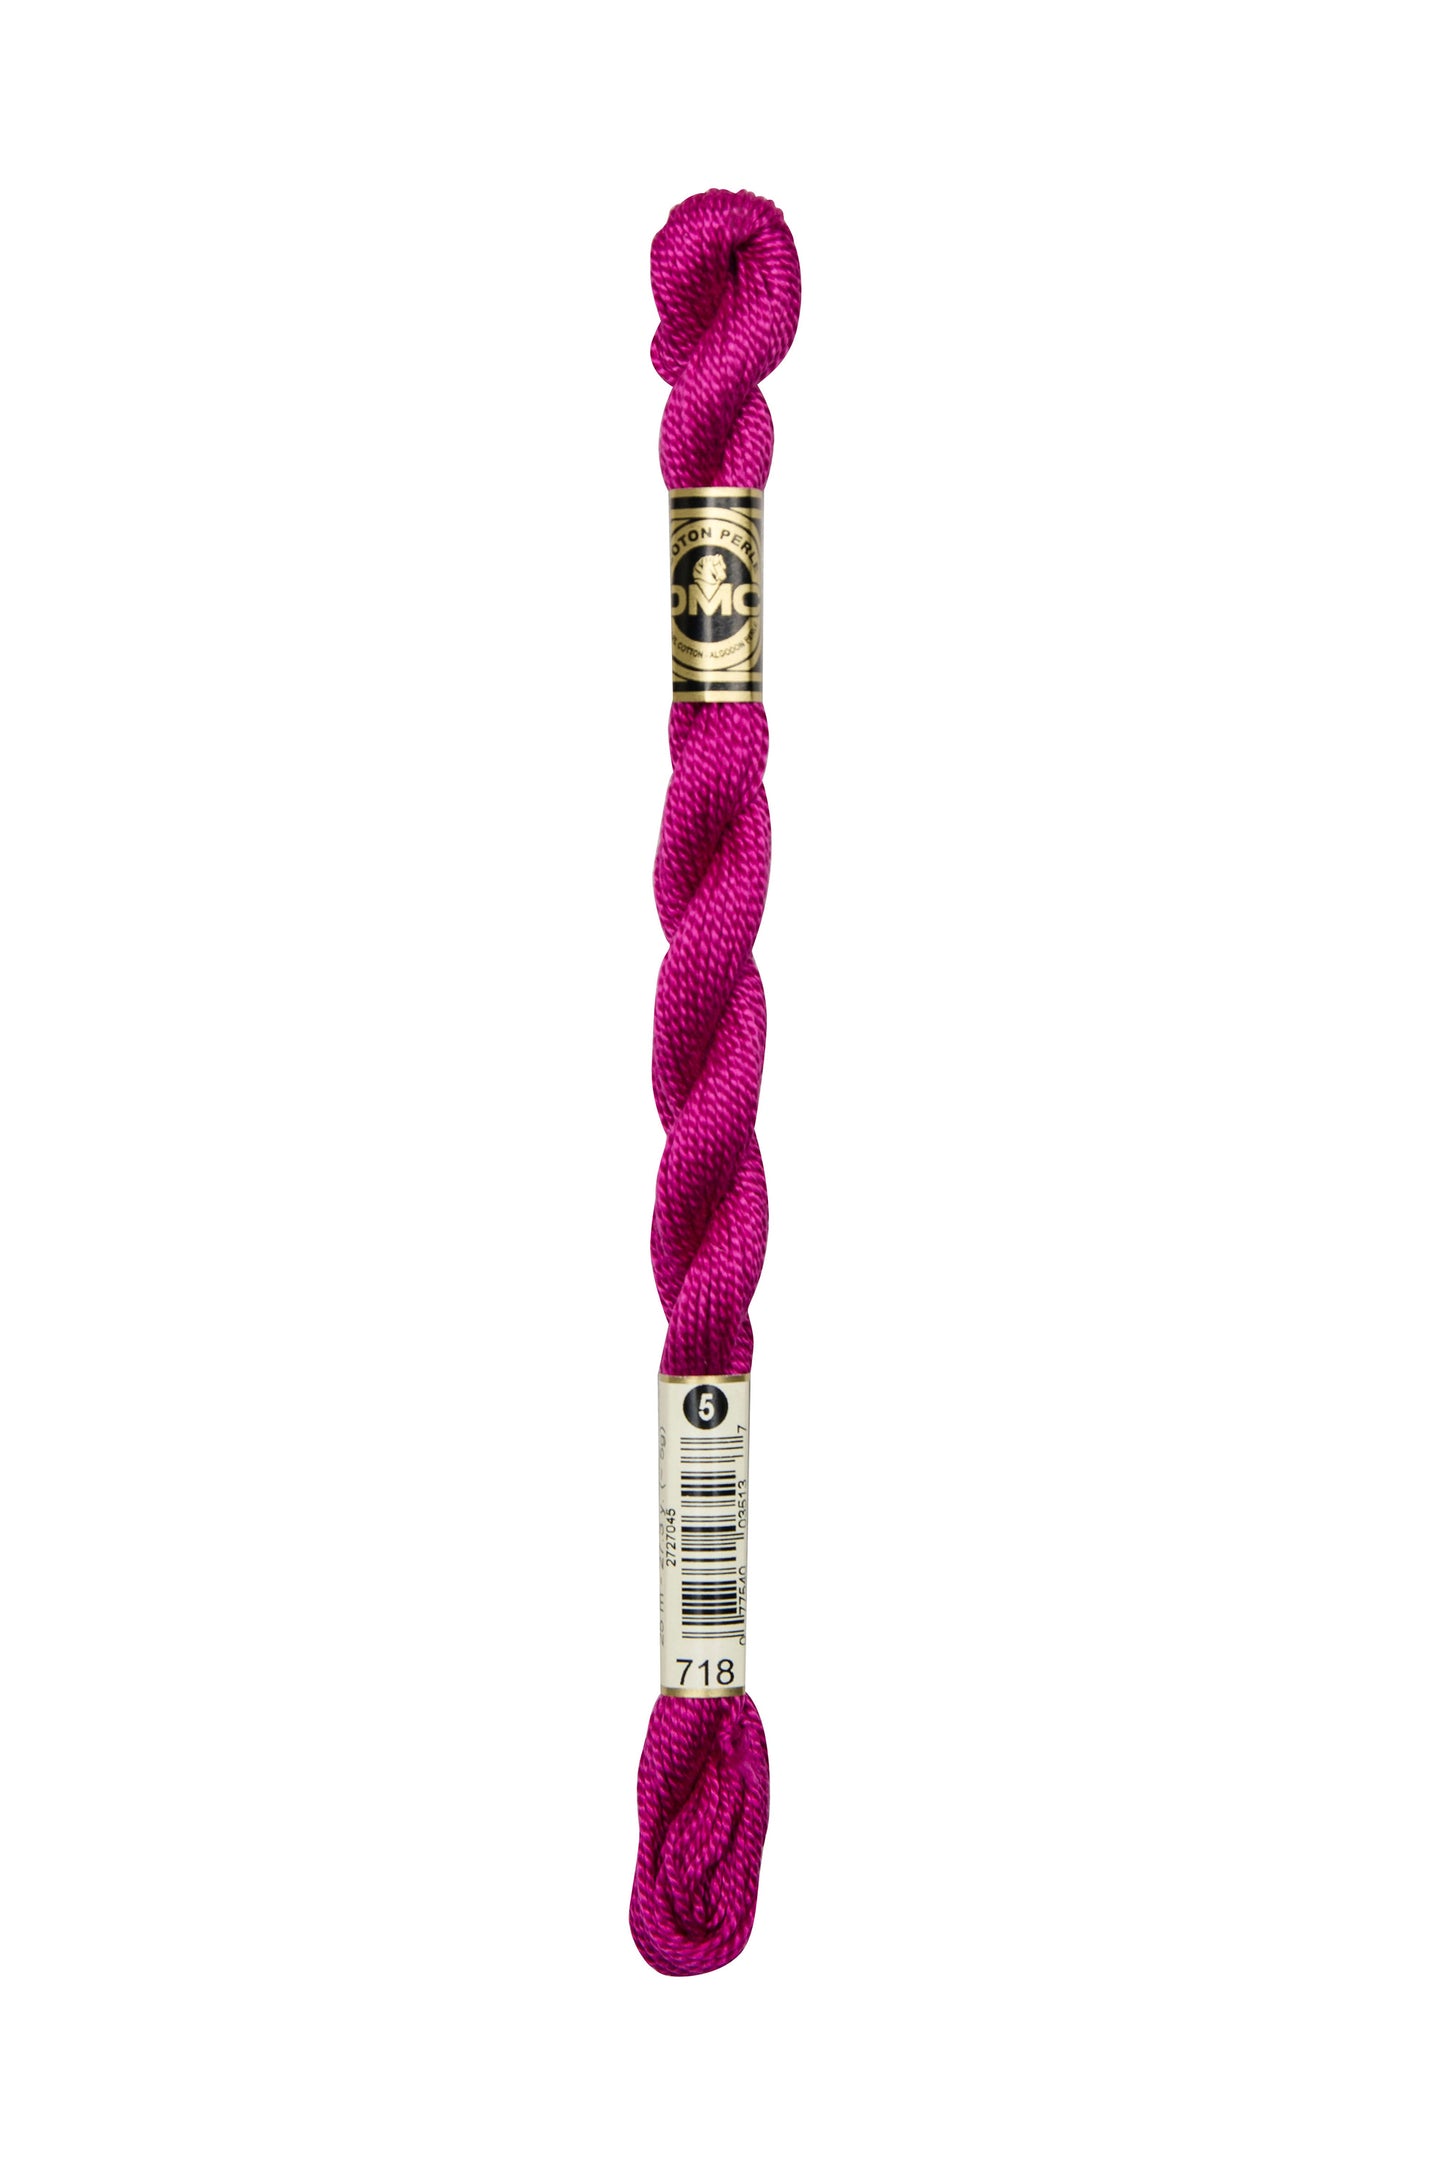 718 Fushia Pink – DMC #5 Perle Cotton Skein